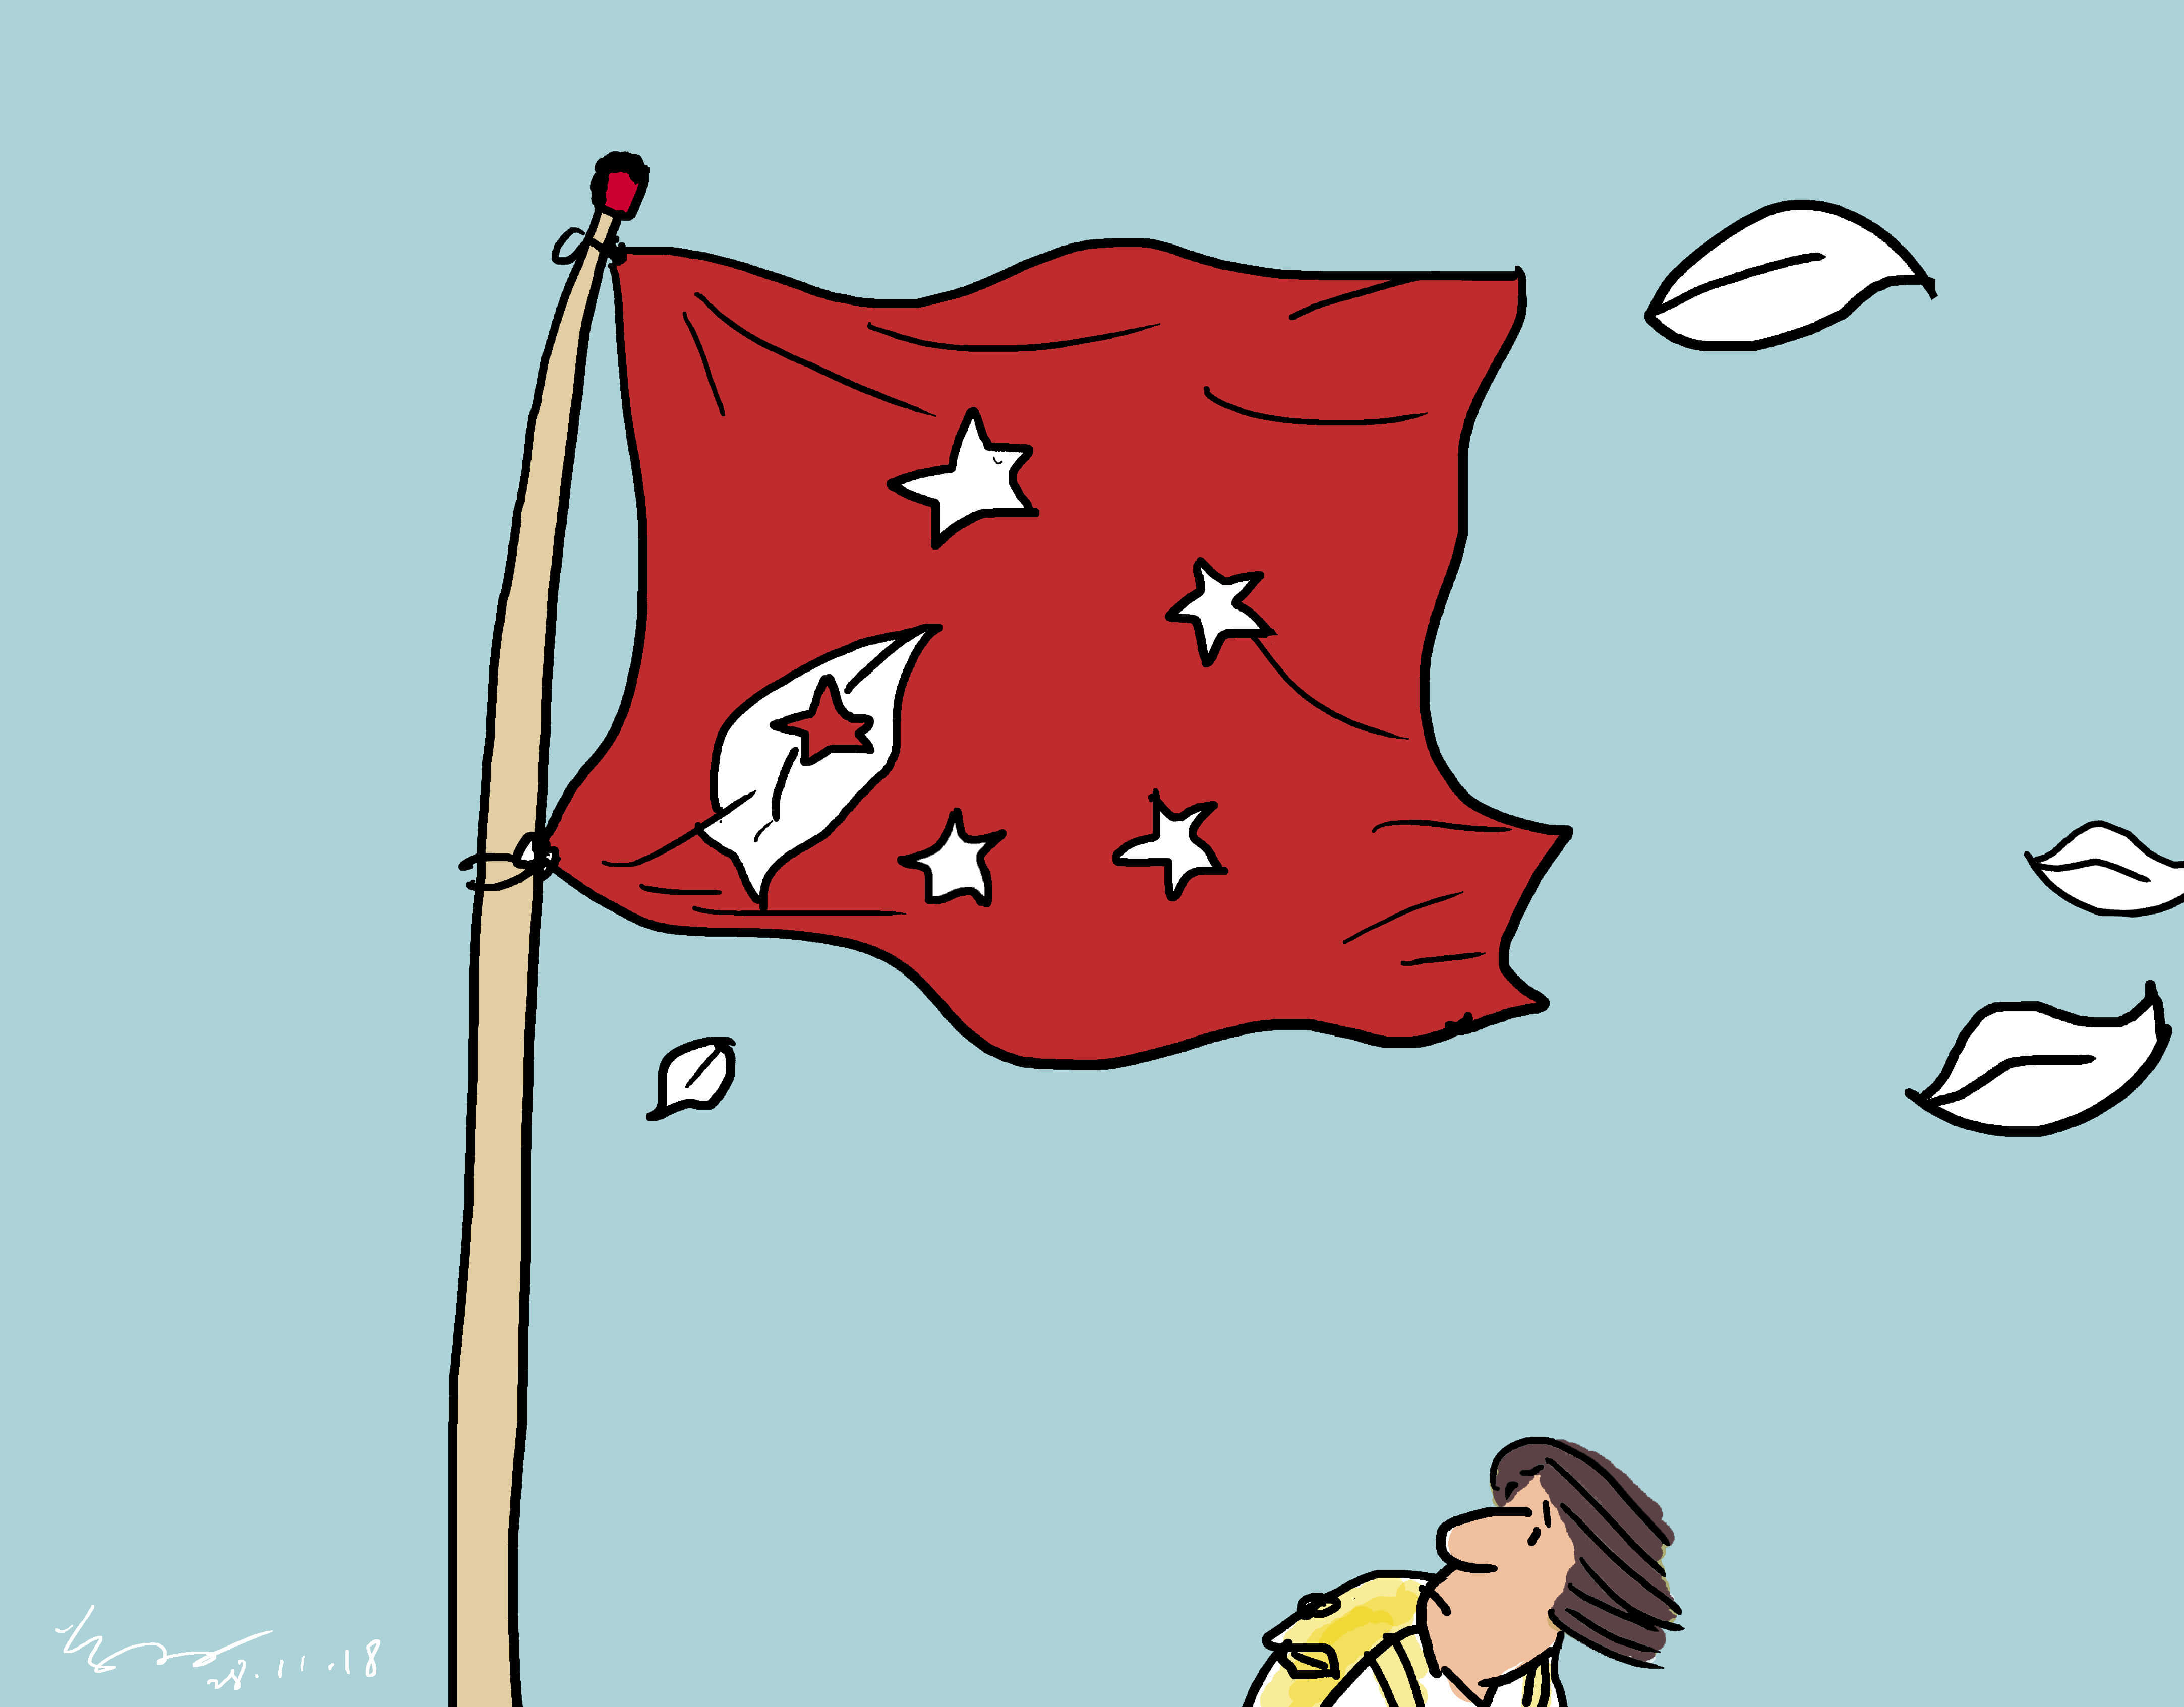 對於在香港最大的恐懼，他認為是港人以往堅信的價值崩解，風雨飄搖，香港愈來愈像中國，特區旗上一片片洋紫荊花瓣被吹走，只剩下五粒星。